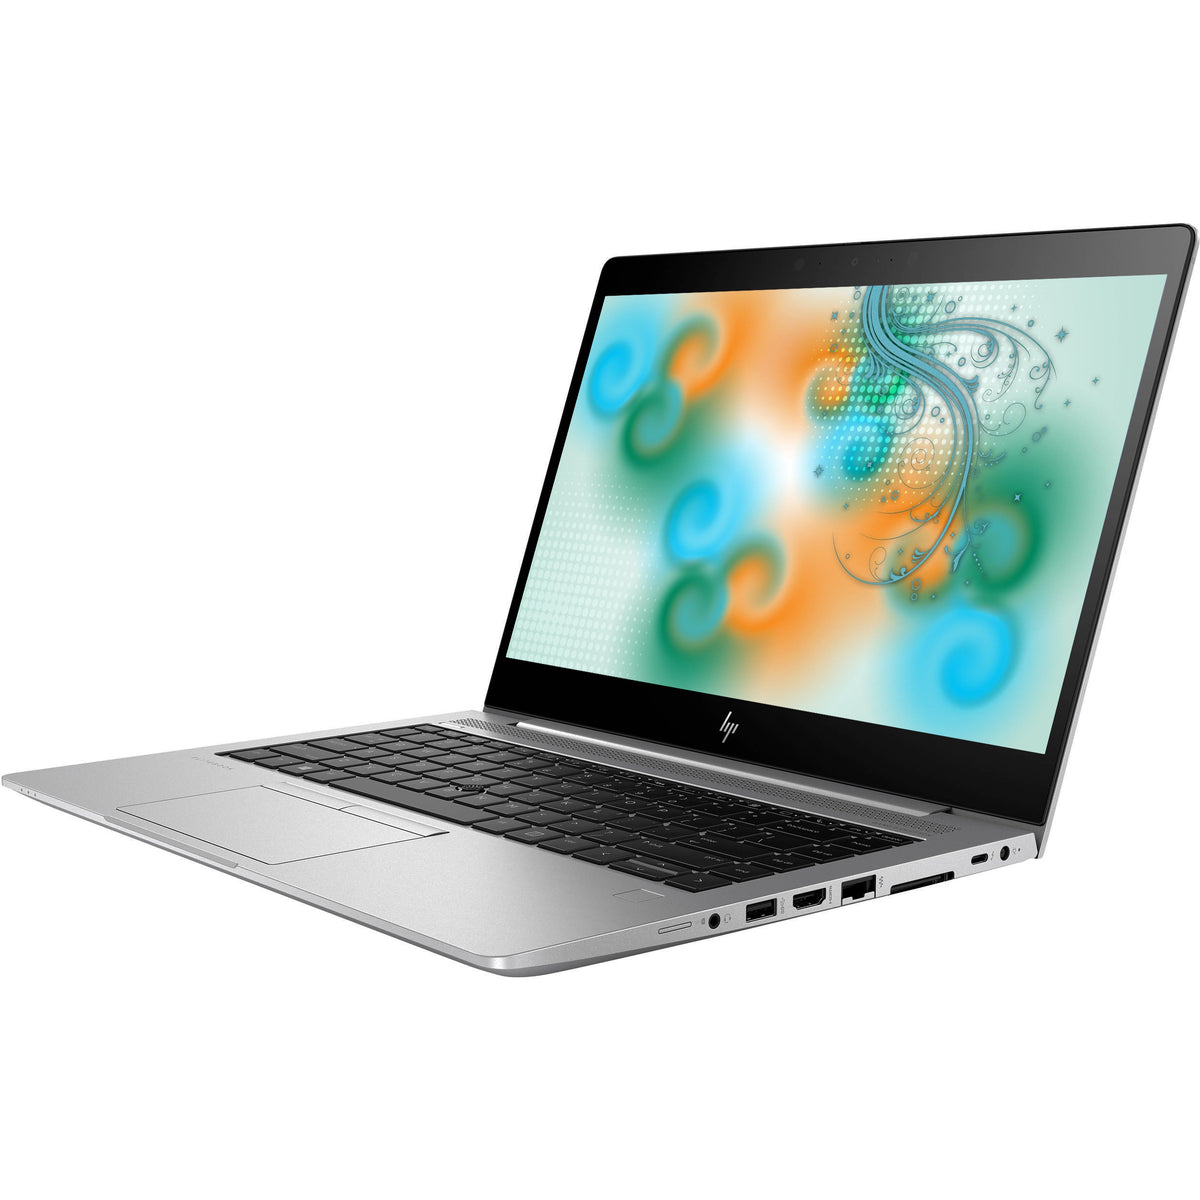 HP EliteBook 840 G5 Core i5-8350U I 8Go I 256 Go SSD NVMe I 14